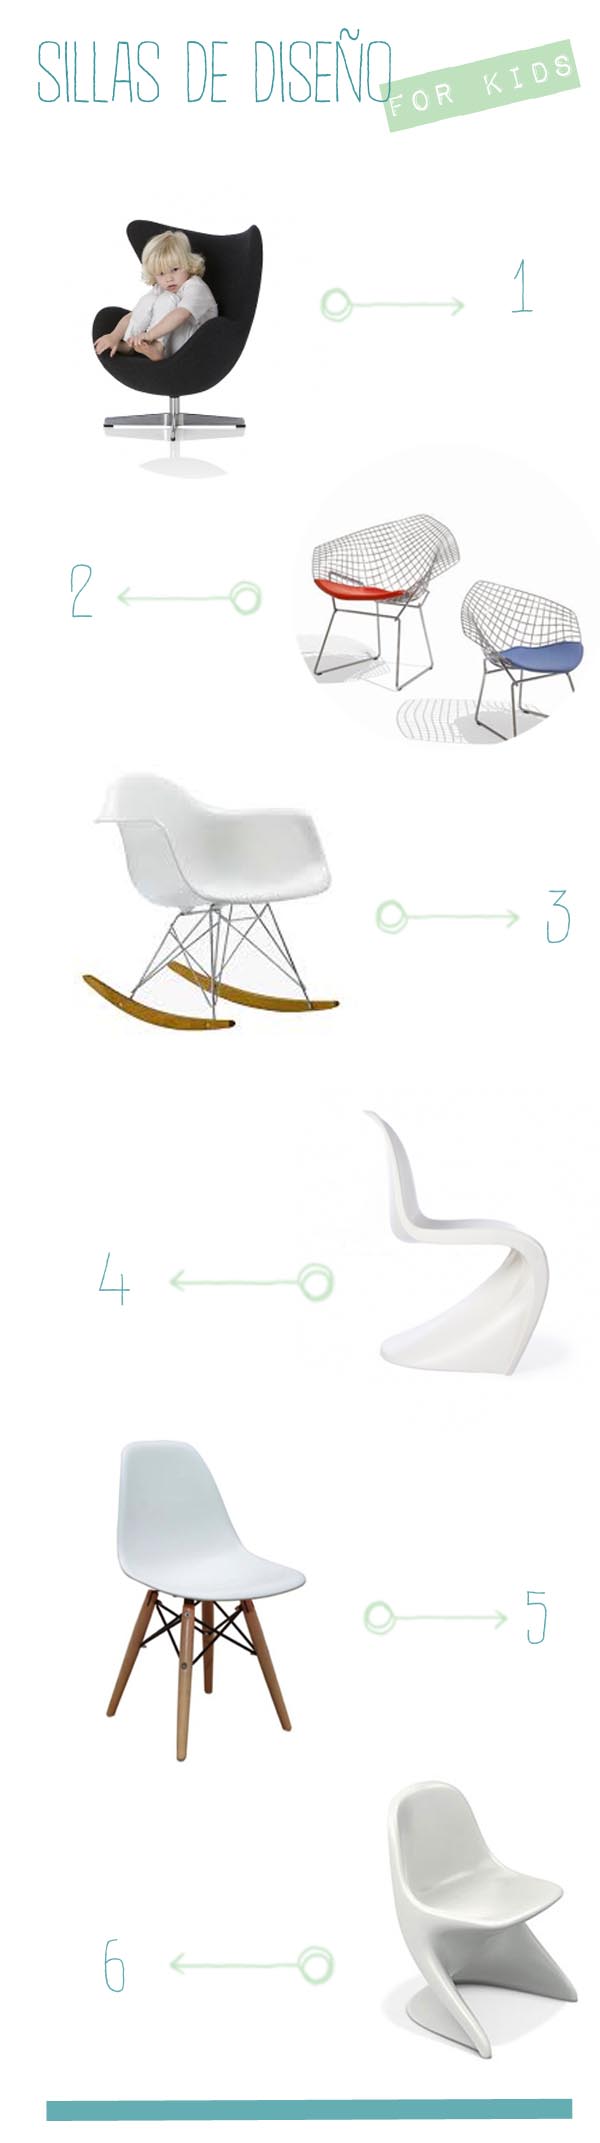 sillas de diseño para niños